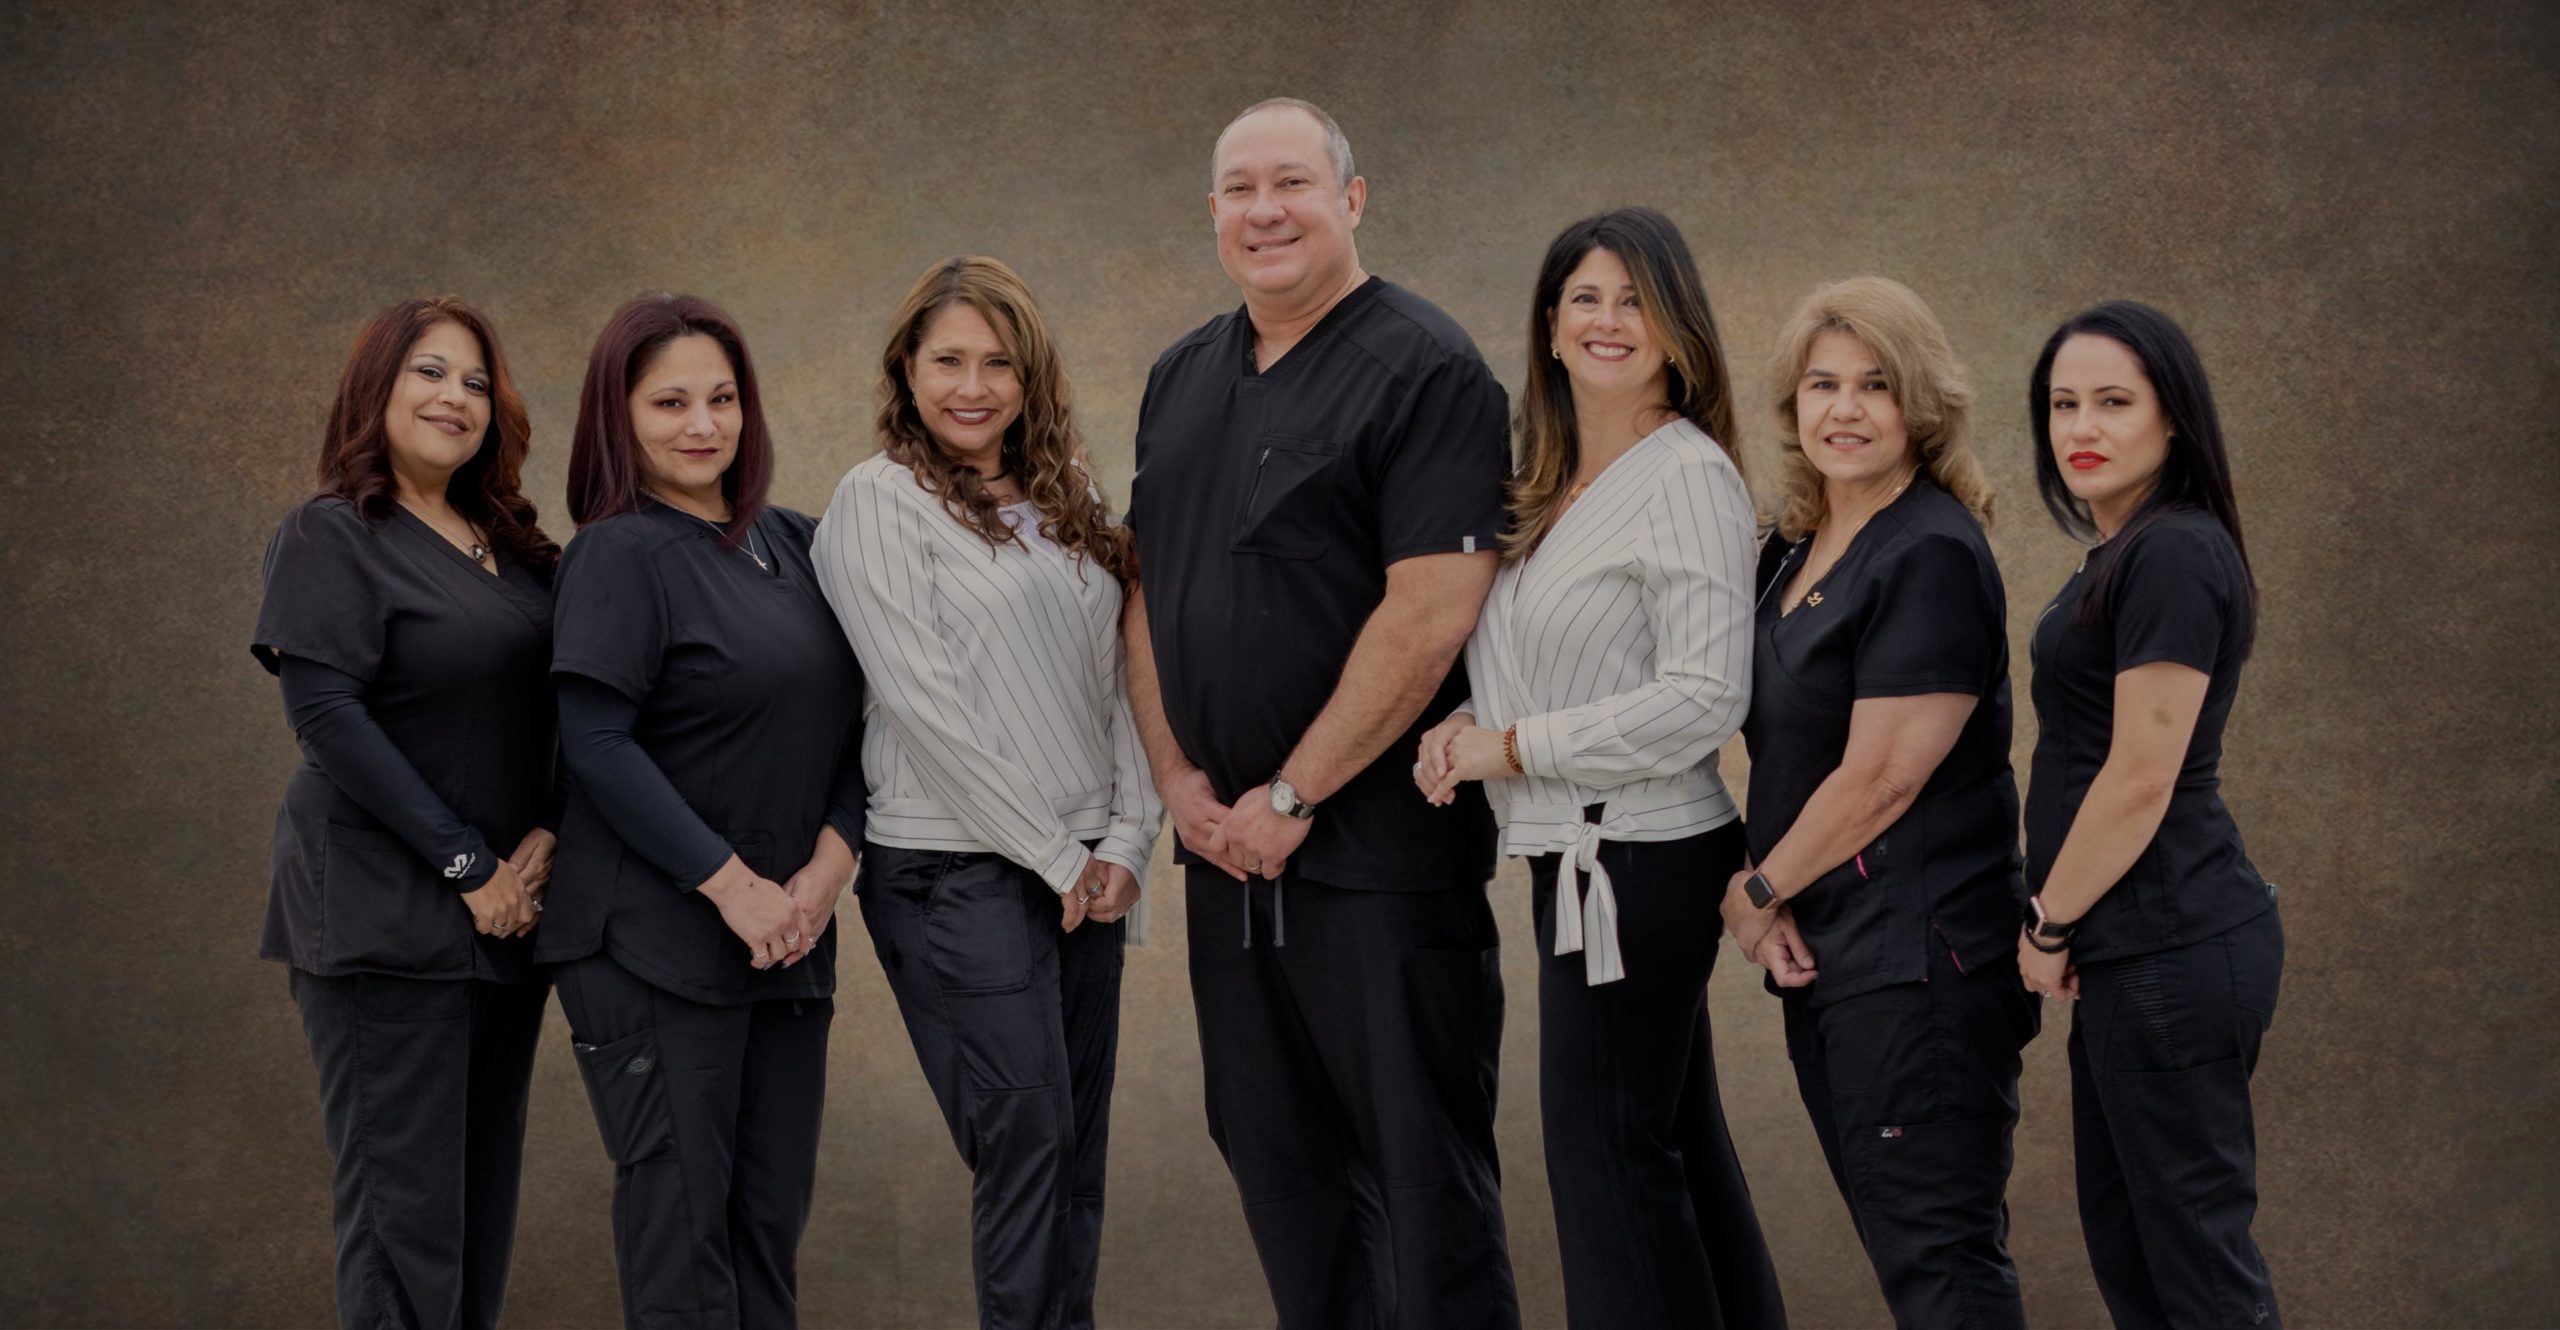 preferred dental center team posing for photo